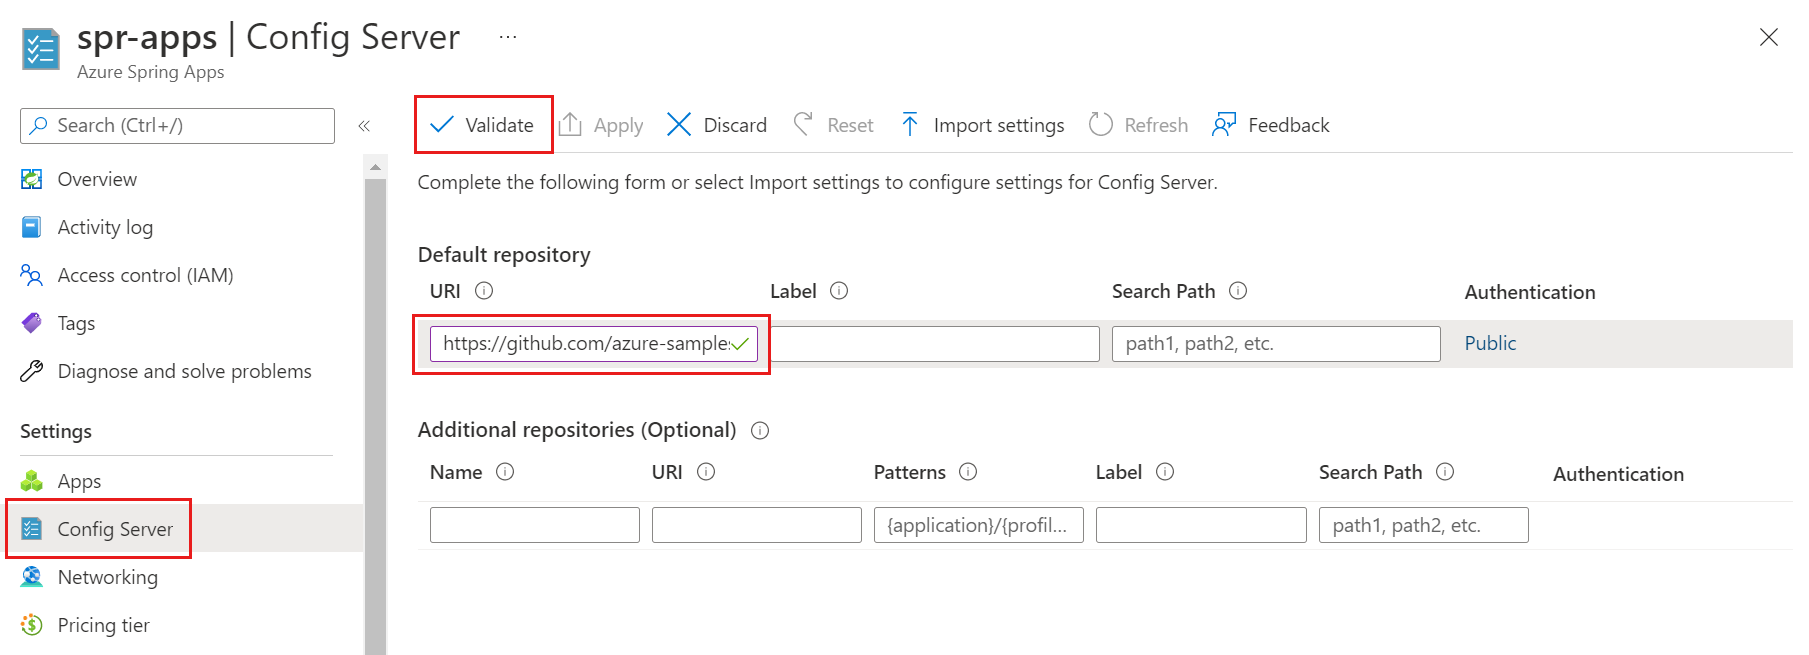 Screenshot de portal do Azure mostrando a página do Servidor Config.